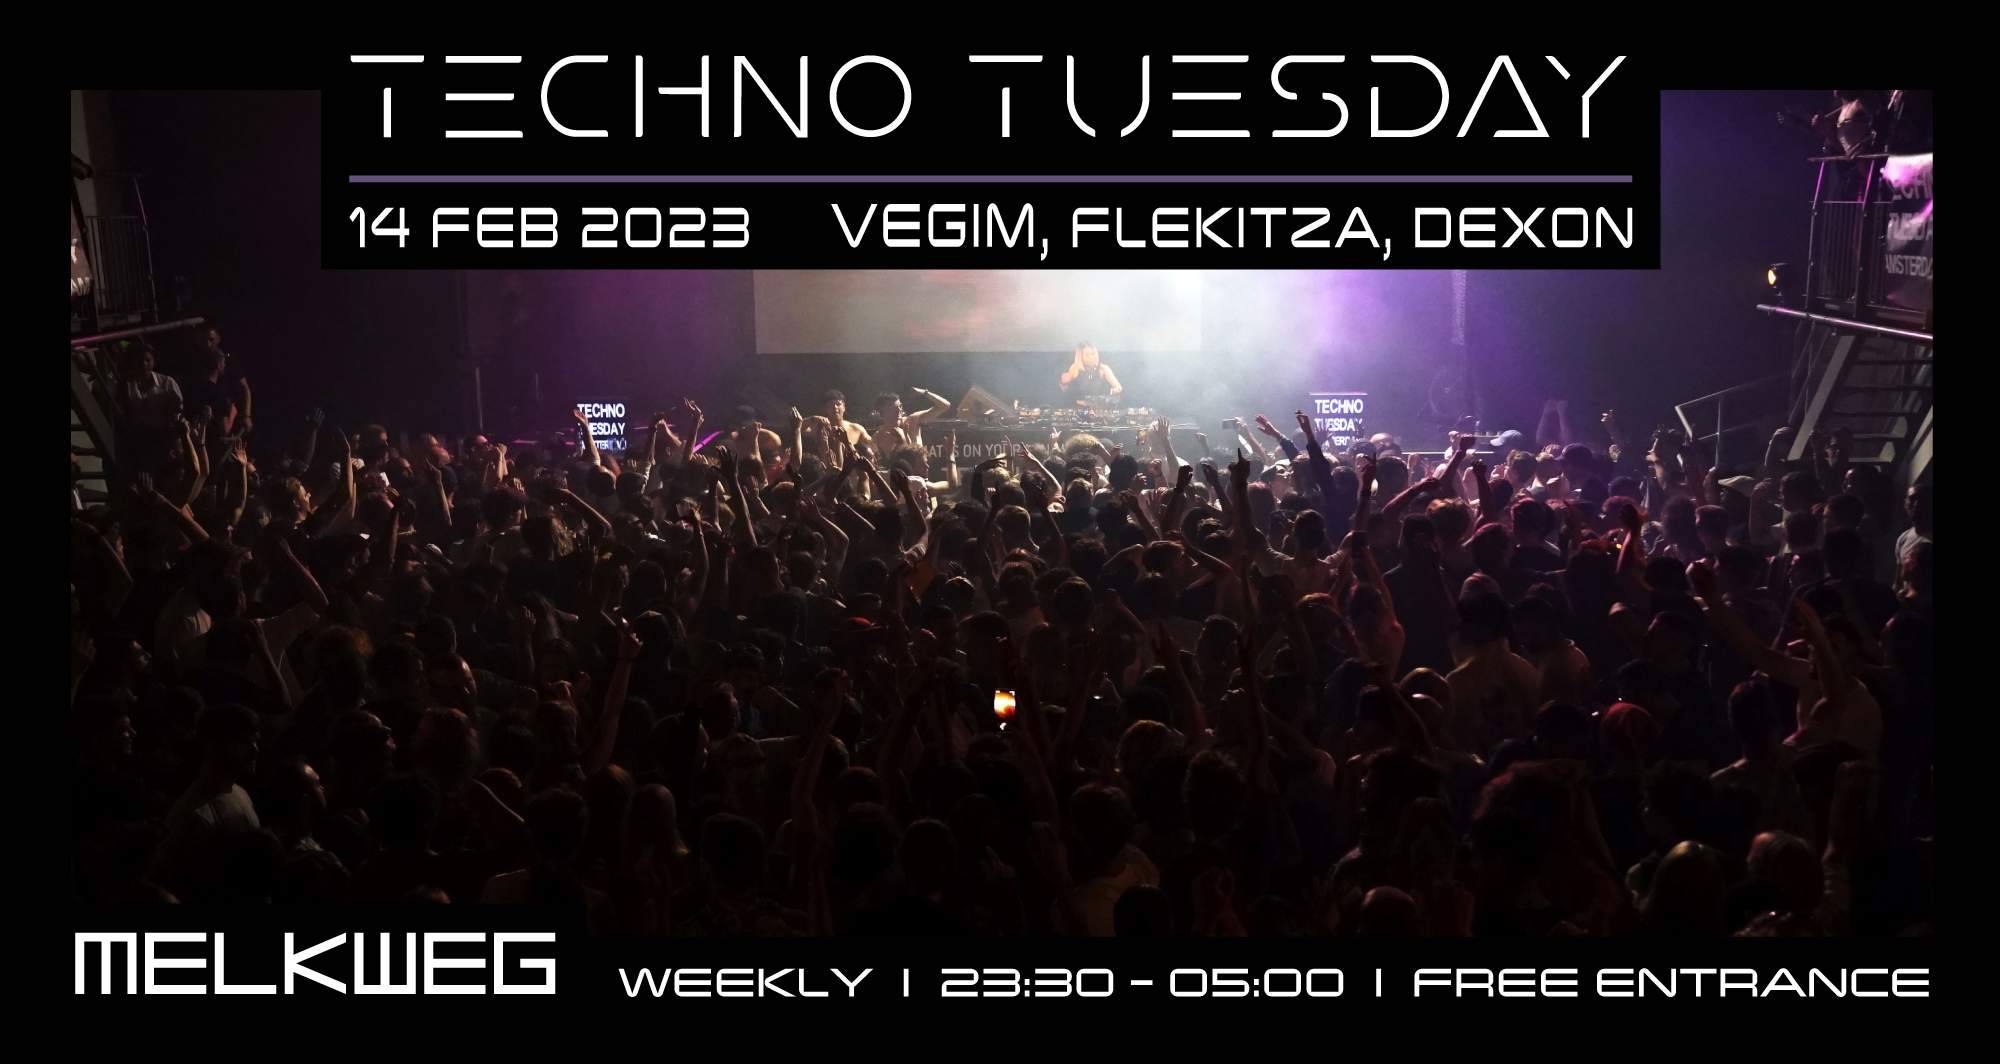 Techno Tuesday Amsterdam - Vegim, Flekitza, Dexon - フライヤー表